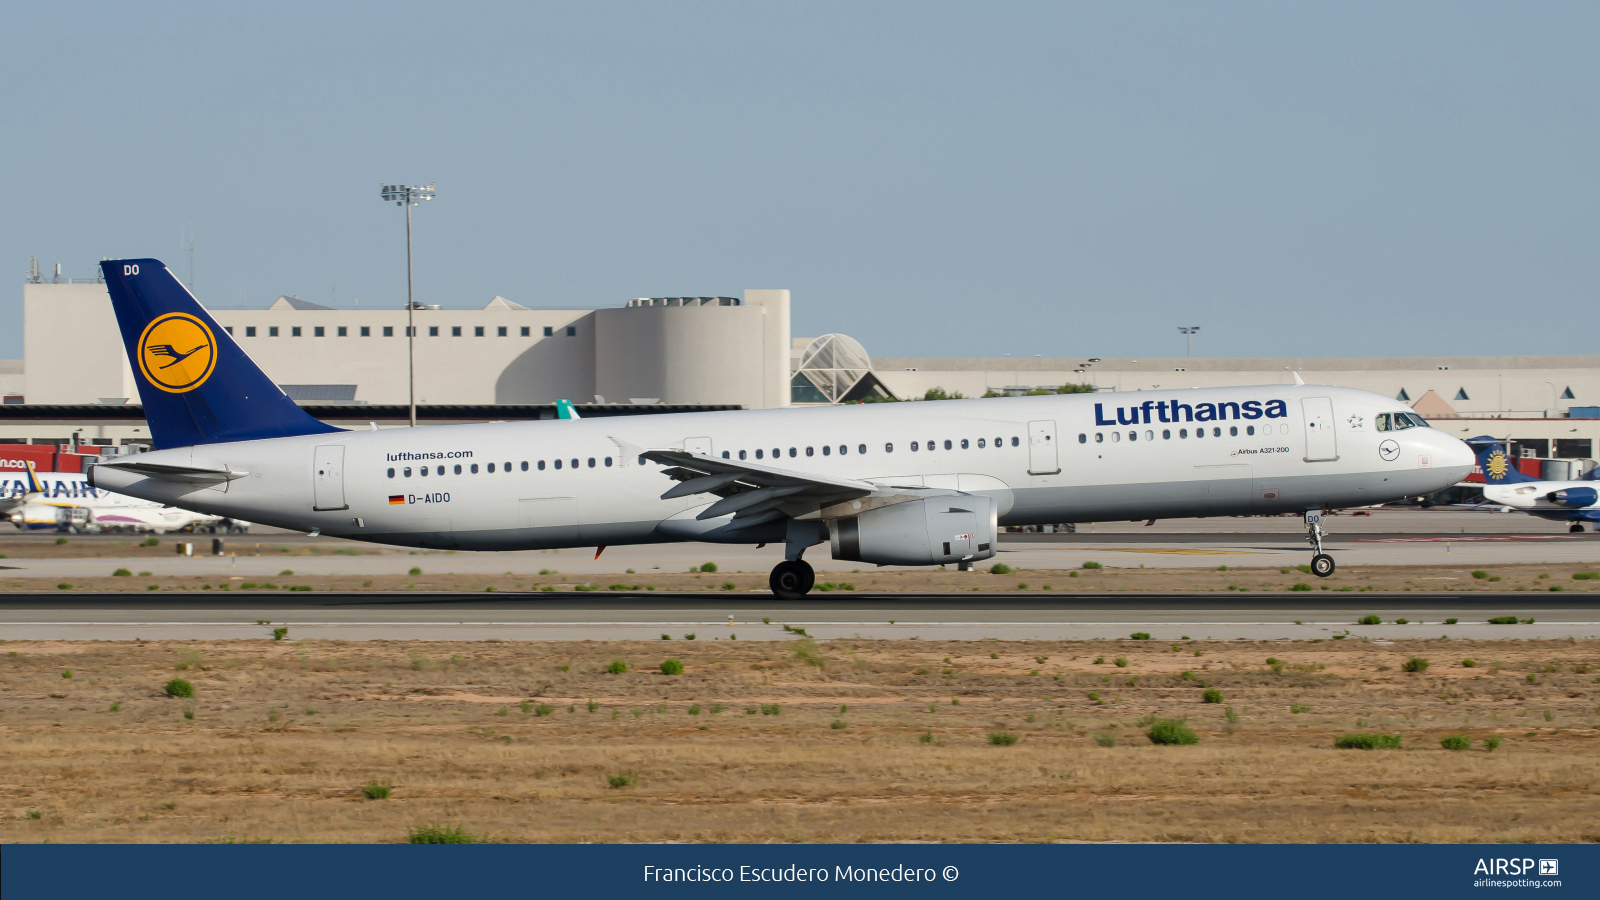 Lufthansa  Airbus A321  D-AIDO